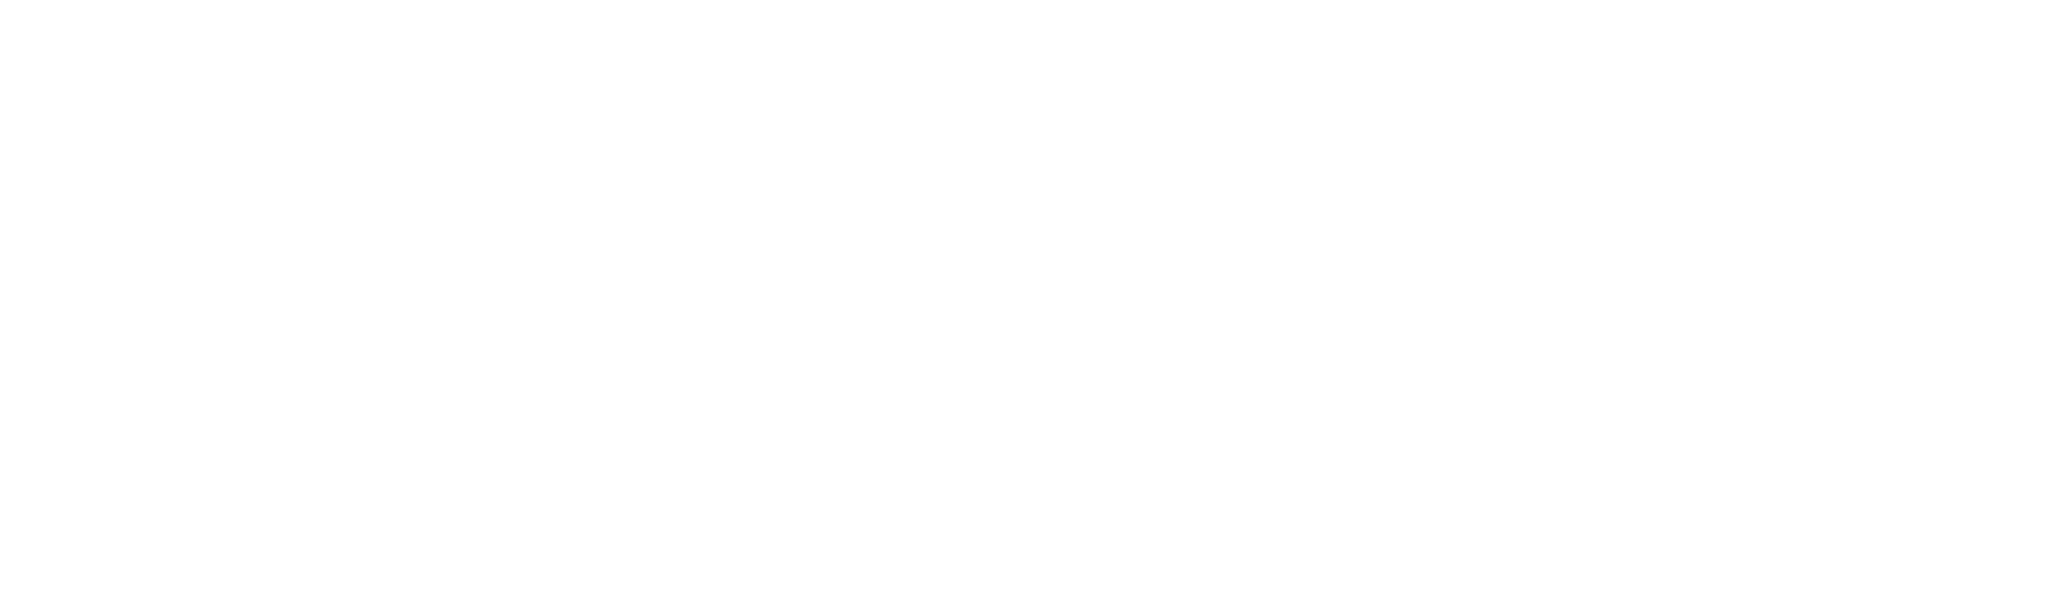 proMaster Consilio